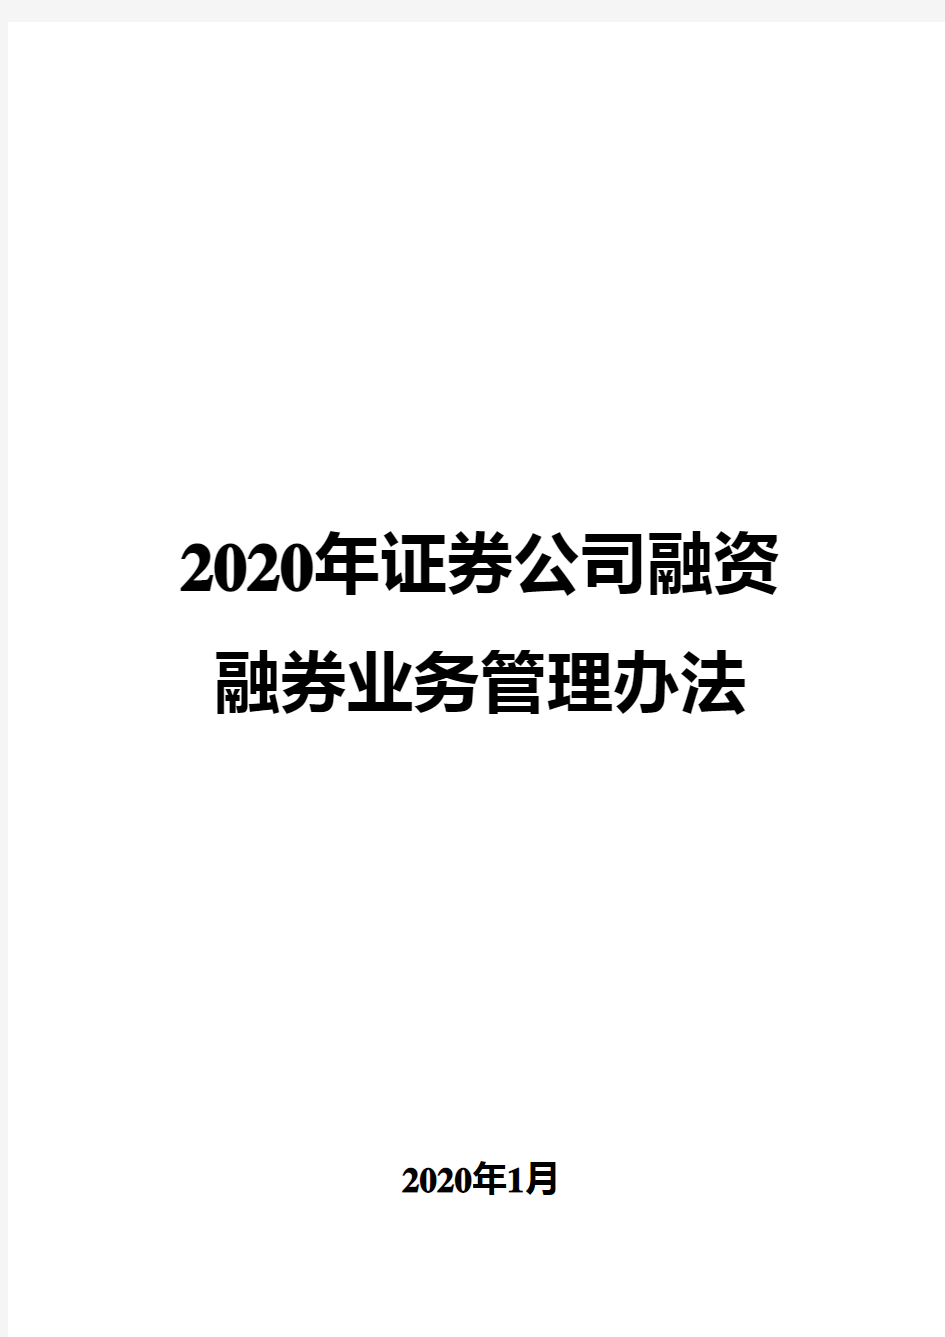 2020年证券公司融资融券业务管理办法